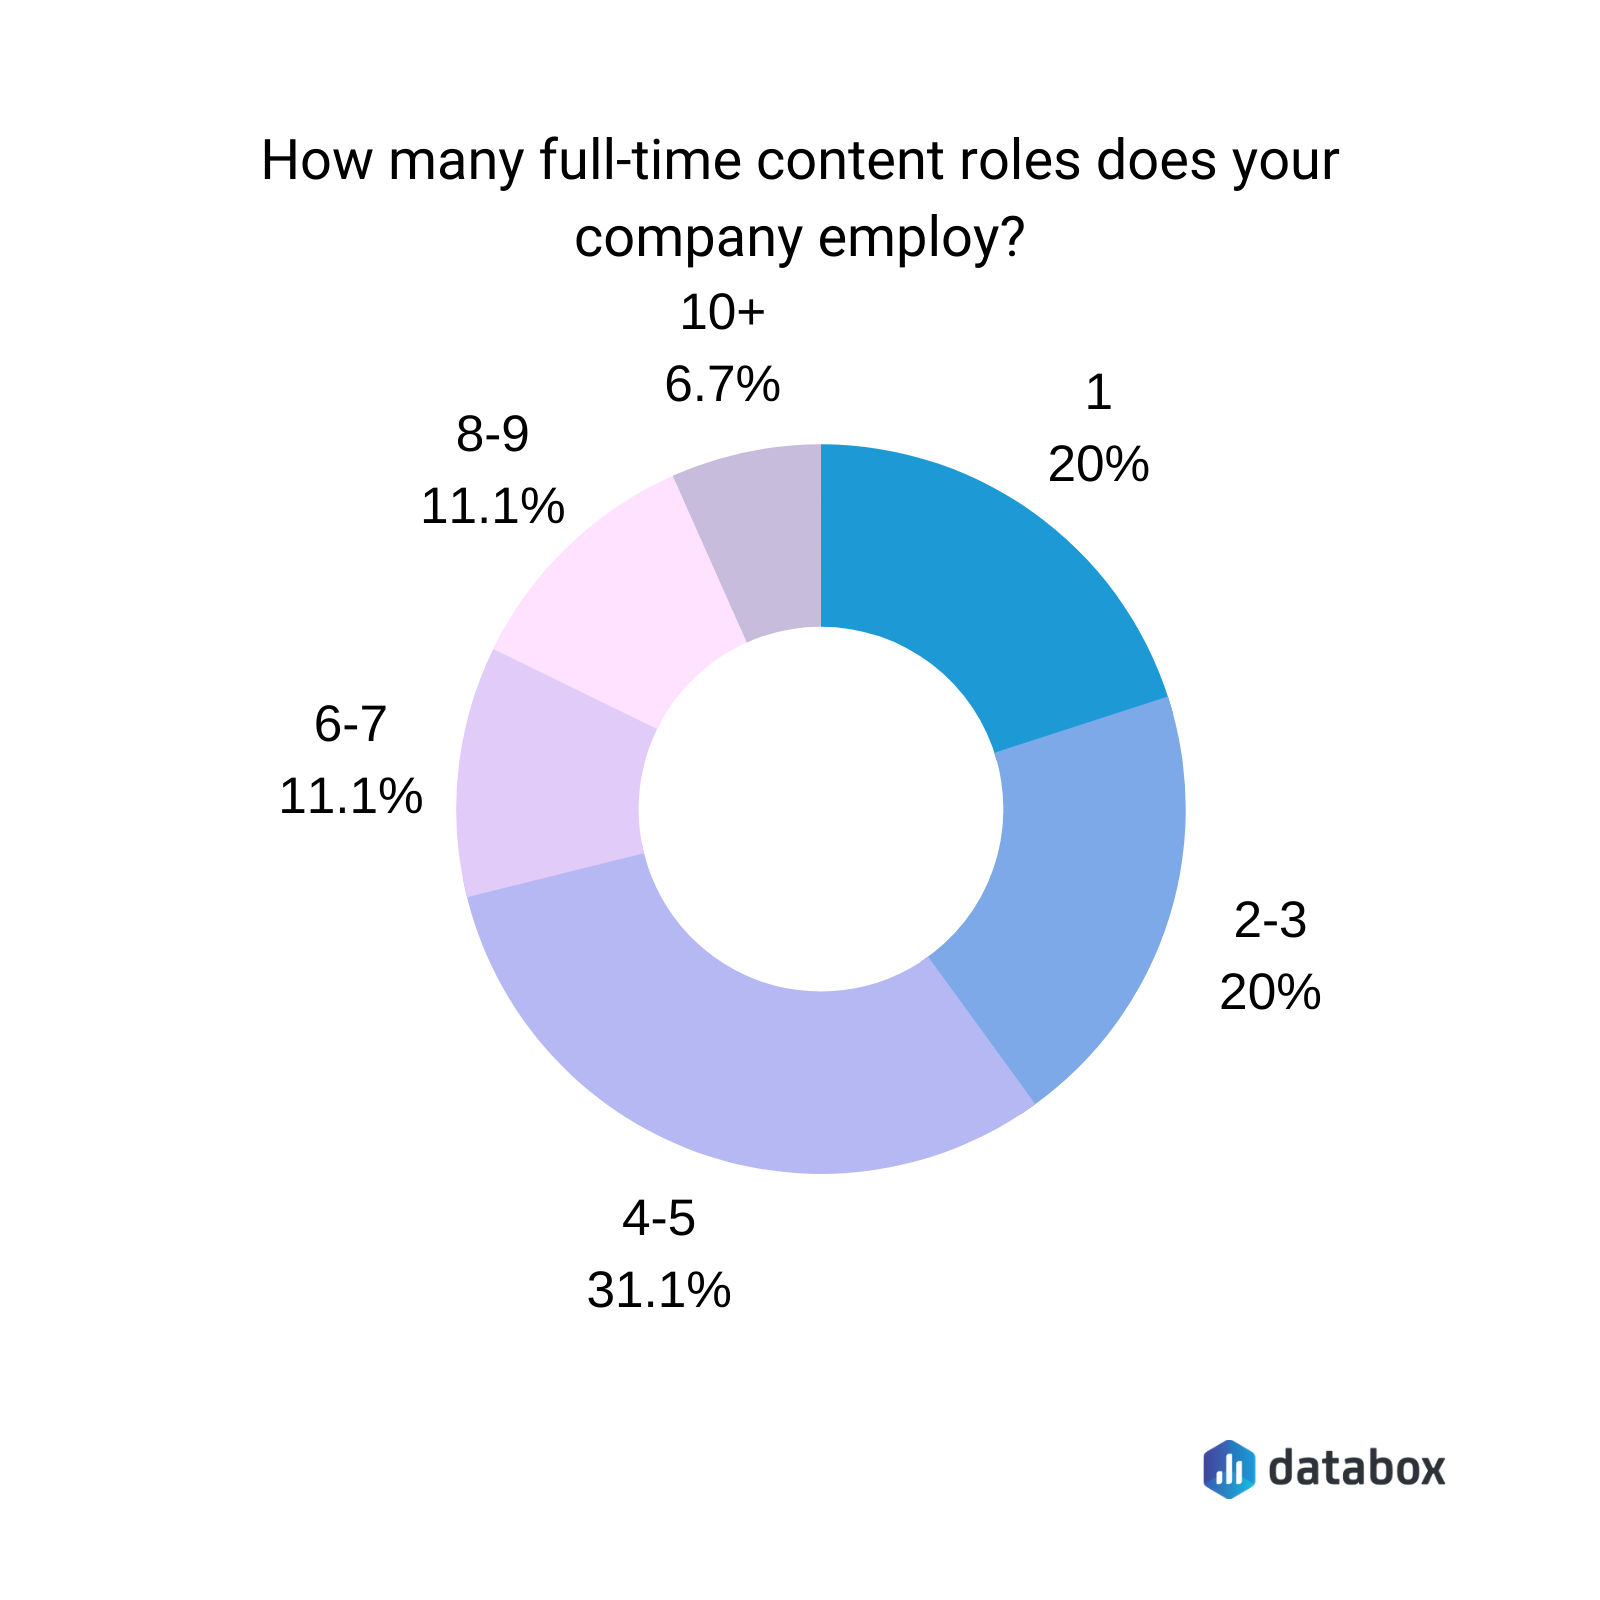 Câte roluri de conținut cu normă întreagă angajează compania dvs.?